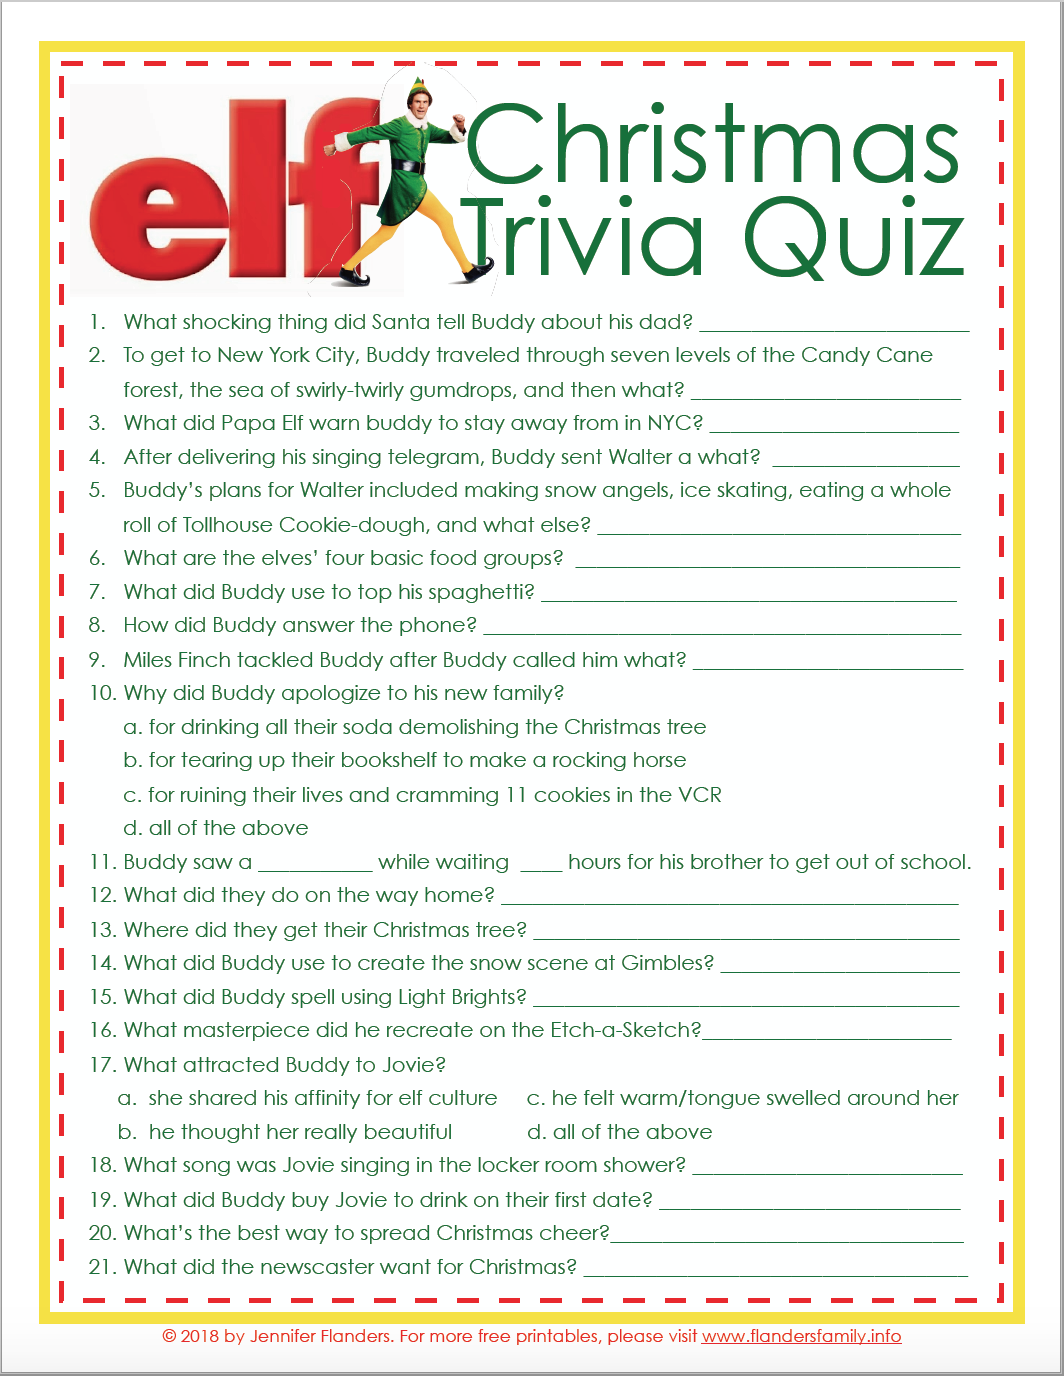 elf-christmas-trivia-game-free-printable-flanders-family-homelife